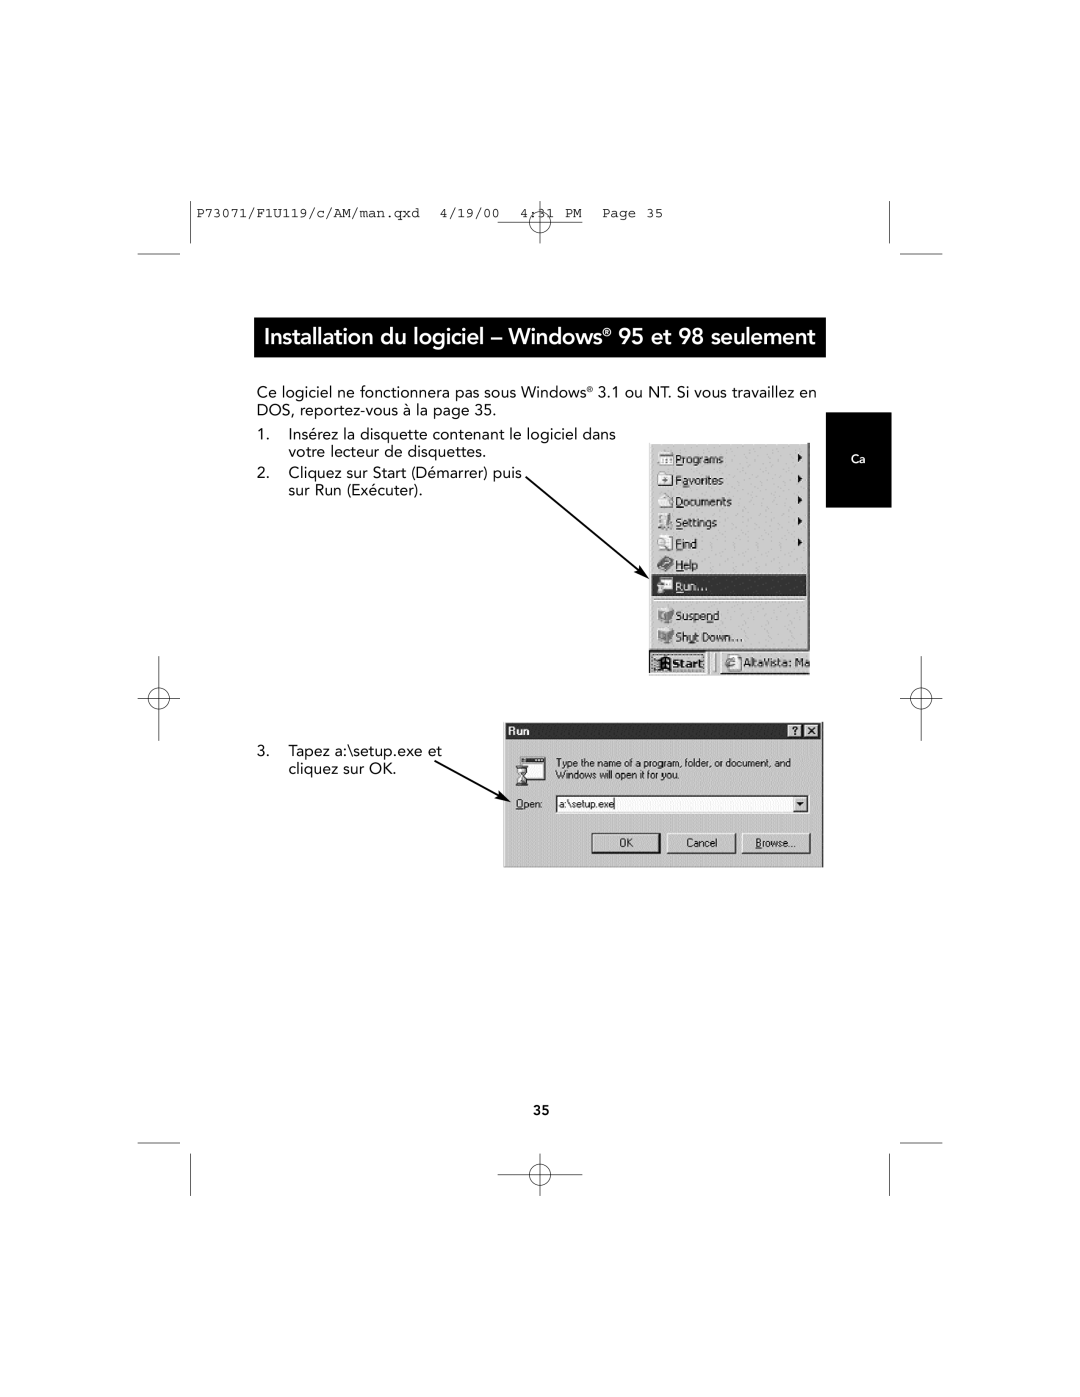 Belkin F1U119 user manual Installation du logiciel - Windows 95 et 98 seulement, votre lecteur de disquettes 